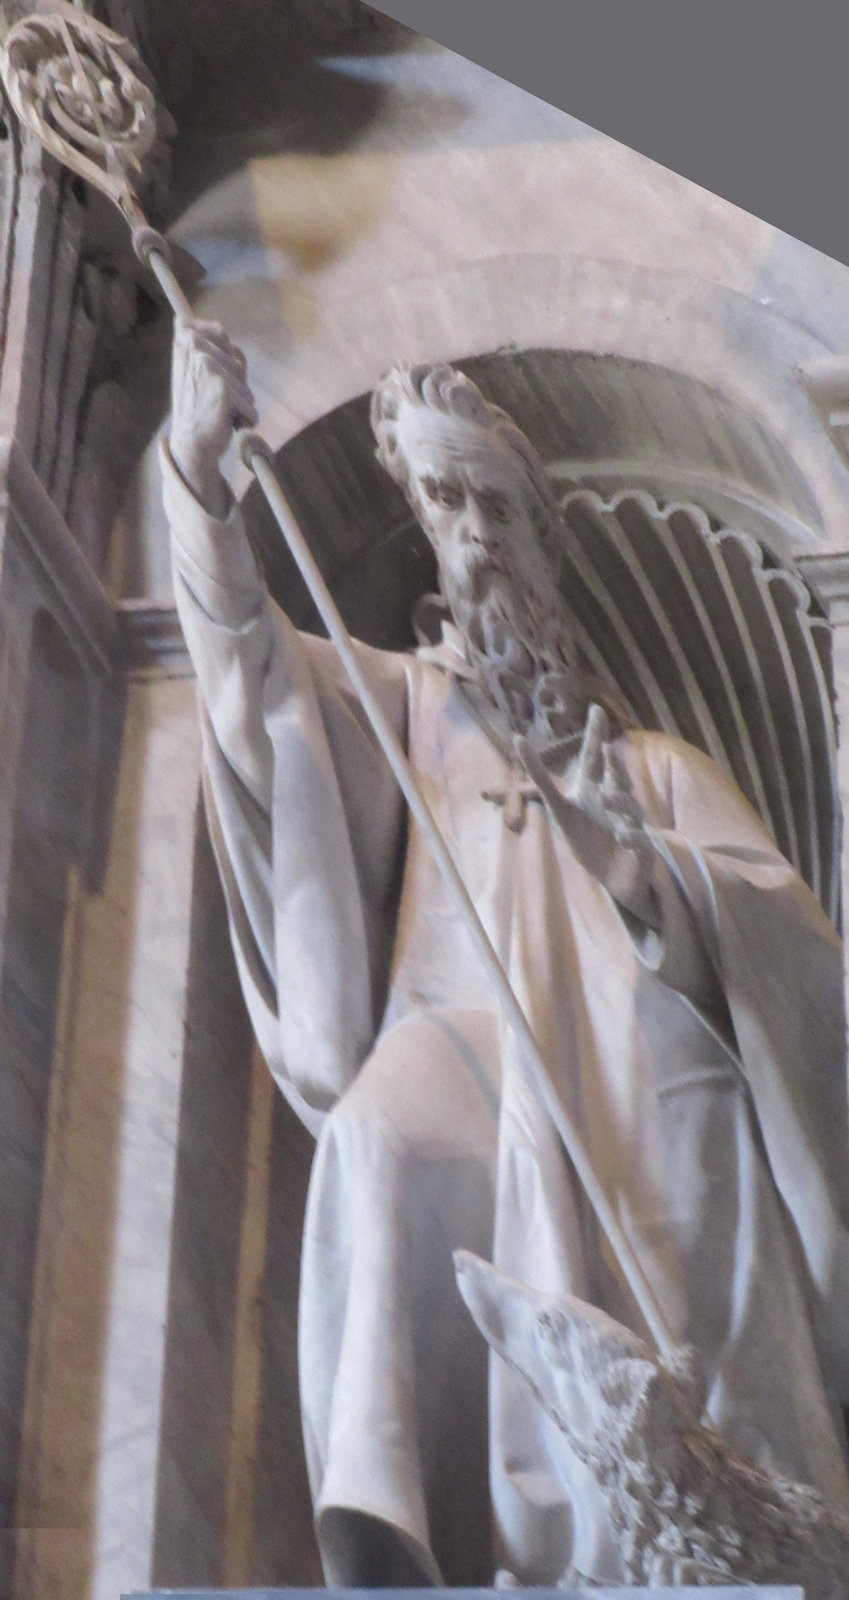 Statue im Petersdom in Rom